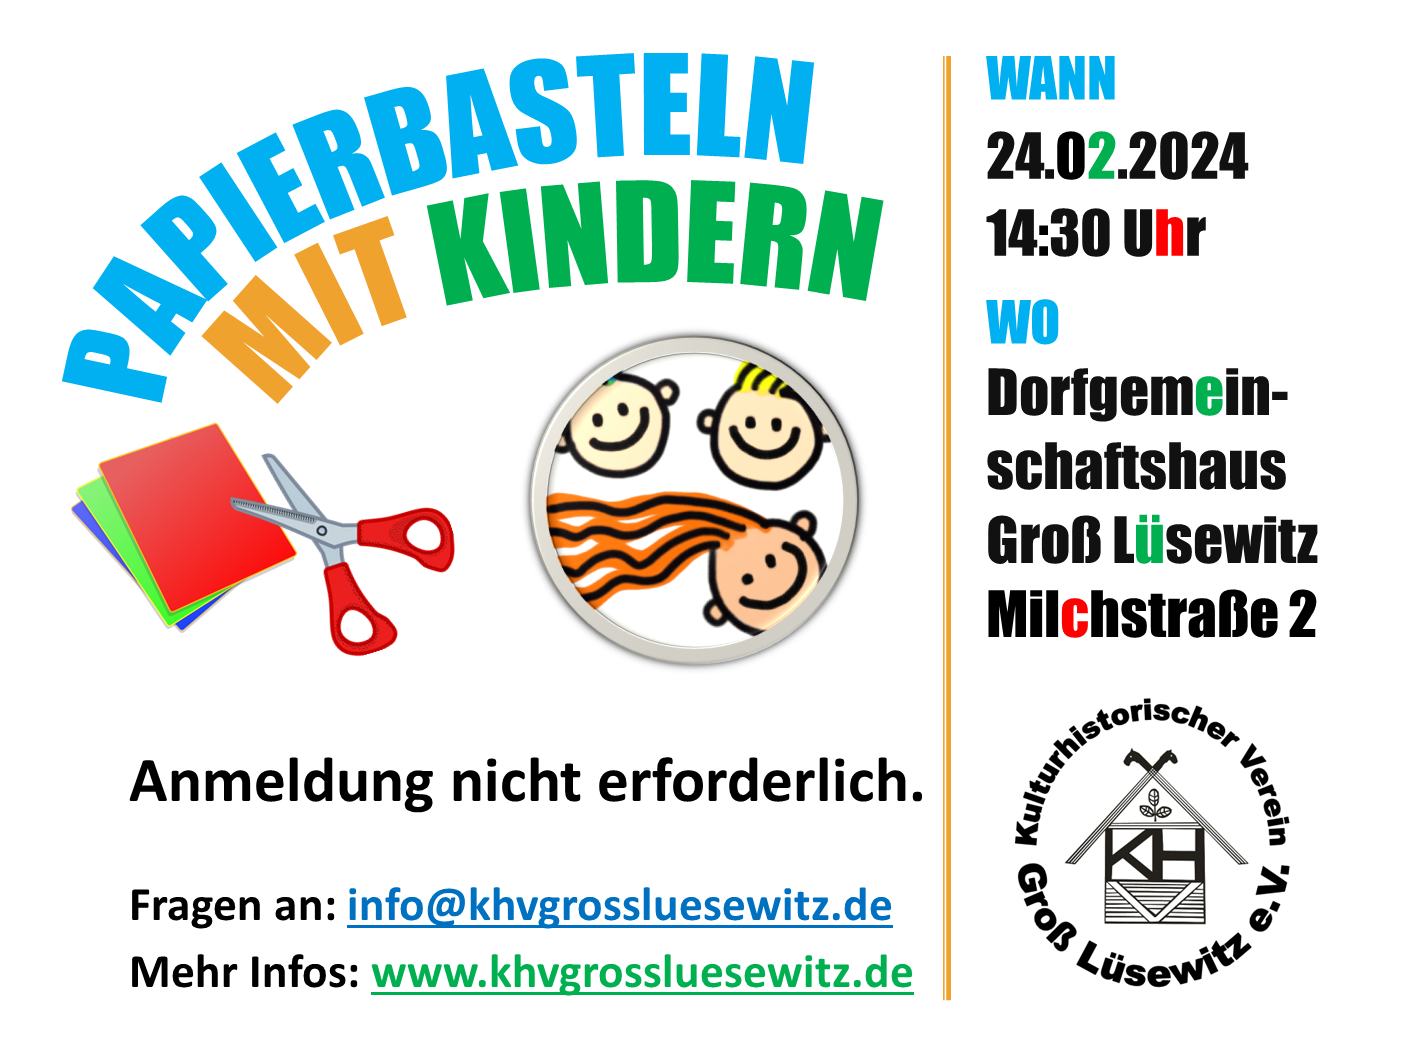 Papierbasteln mit Kindern Wann: 24.02.2024 Wo: Dorfgemeinschaftshaus Groß Lüsewitz Milchstraße 2 Anmeldung nicht erforderlich